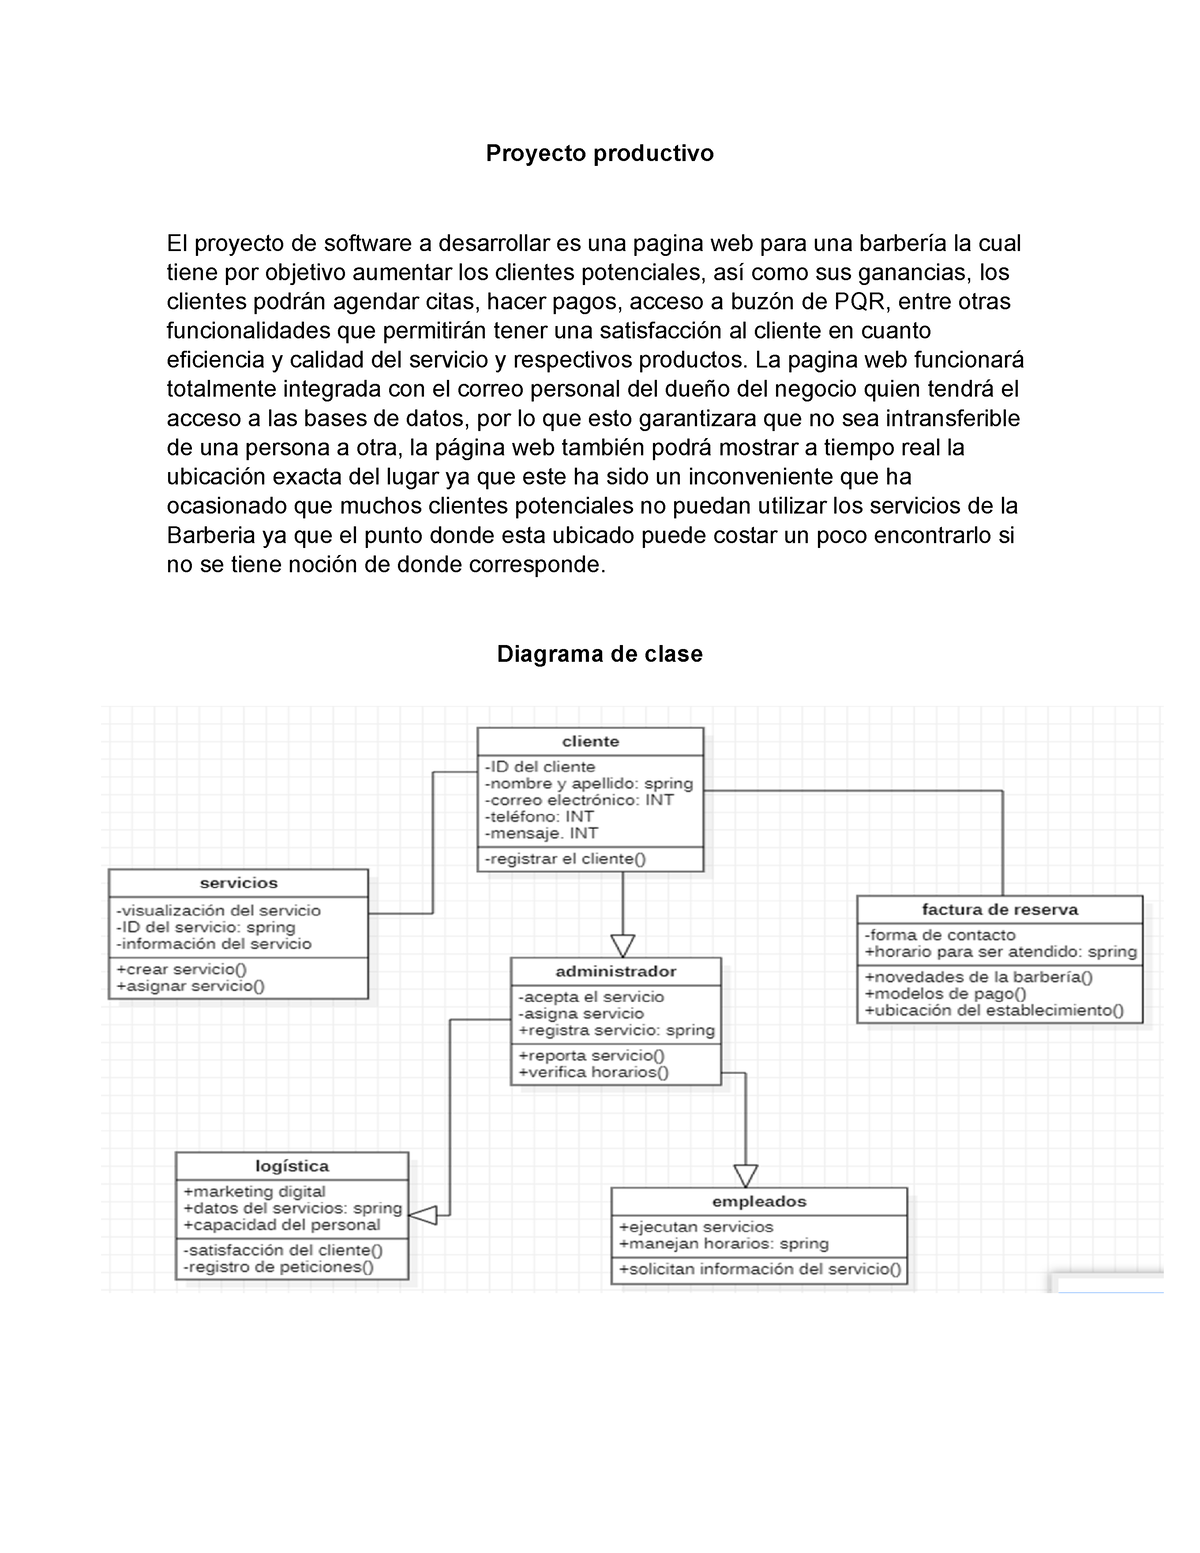 Diagrama De Clases Del Proyecto De Software Ga4 220501095 Aa2 Ev04 Sto Tecnologo En Analisis 7294